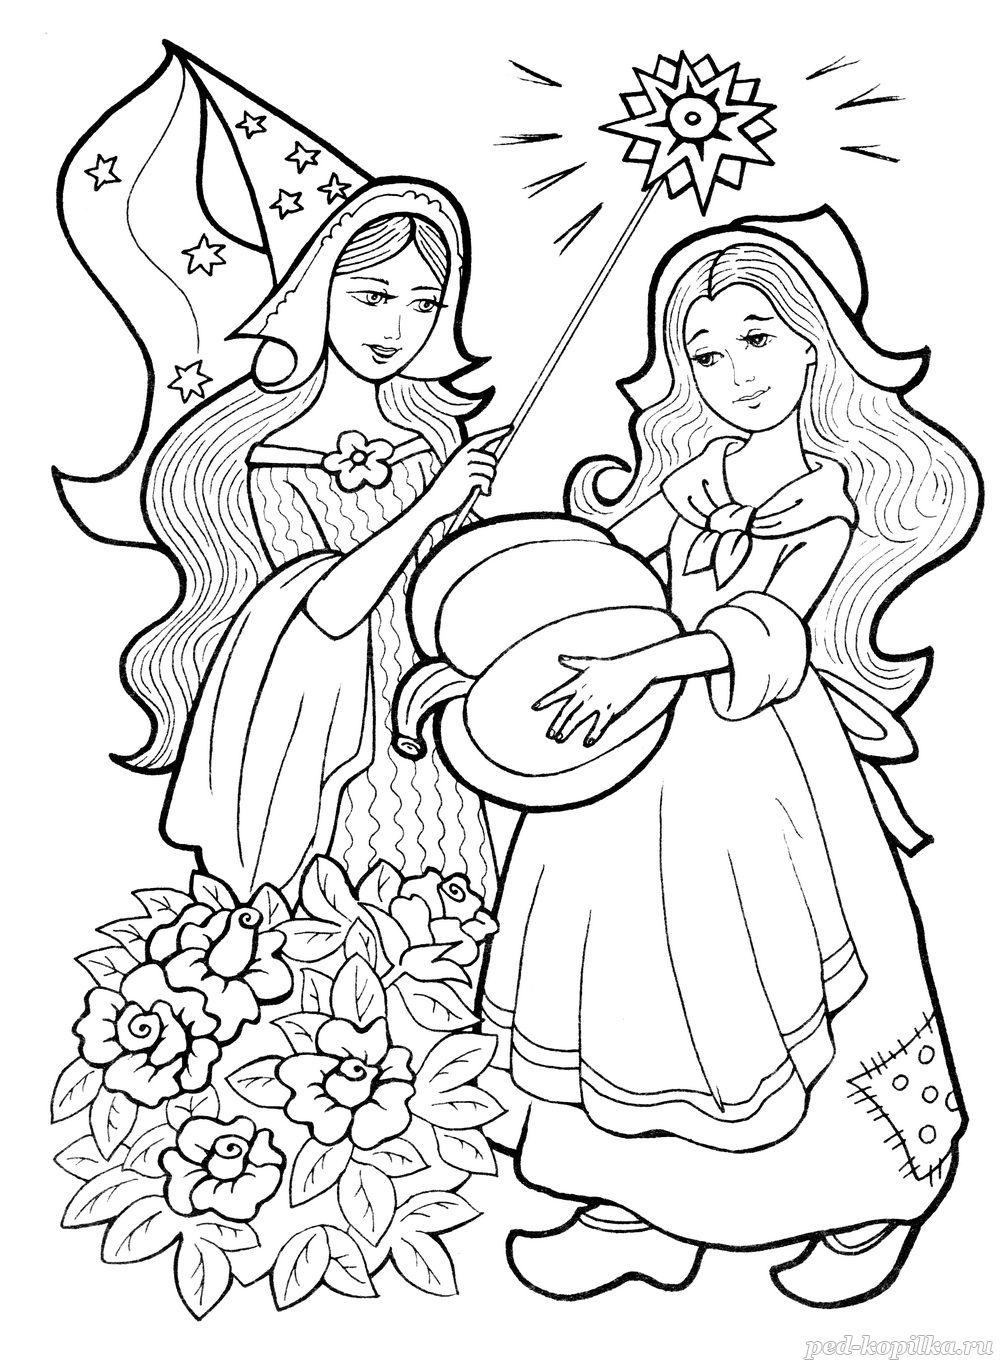 Розмальовки дітей Попелюшка і чарівниця з гарбузом в руці чарівна паличка